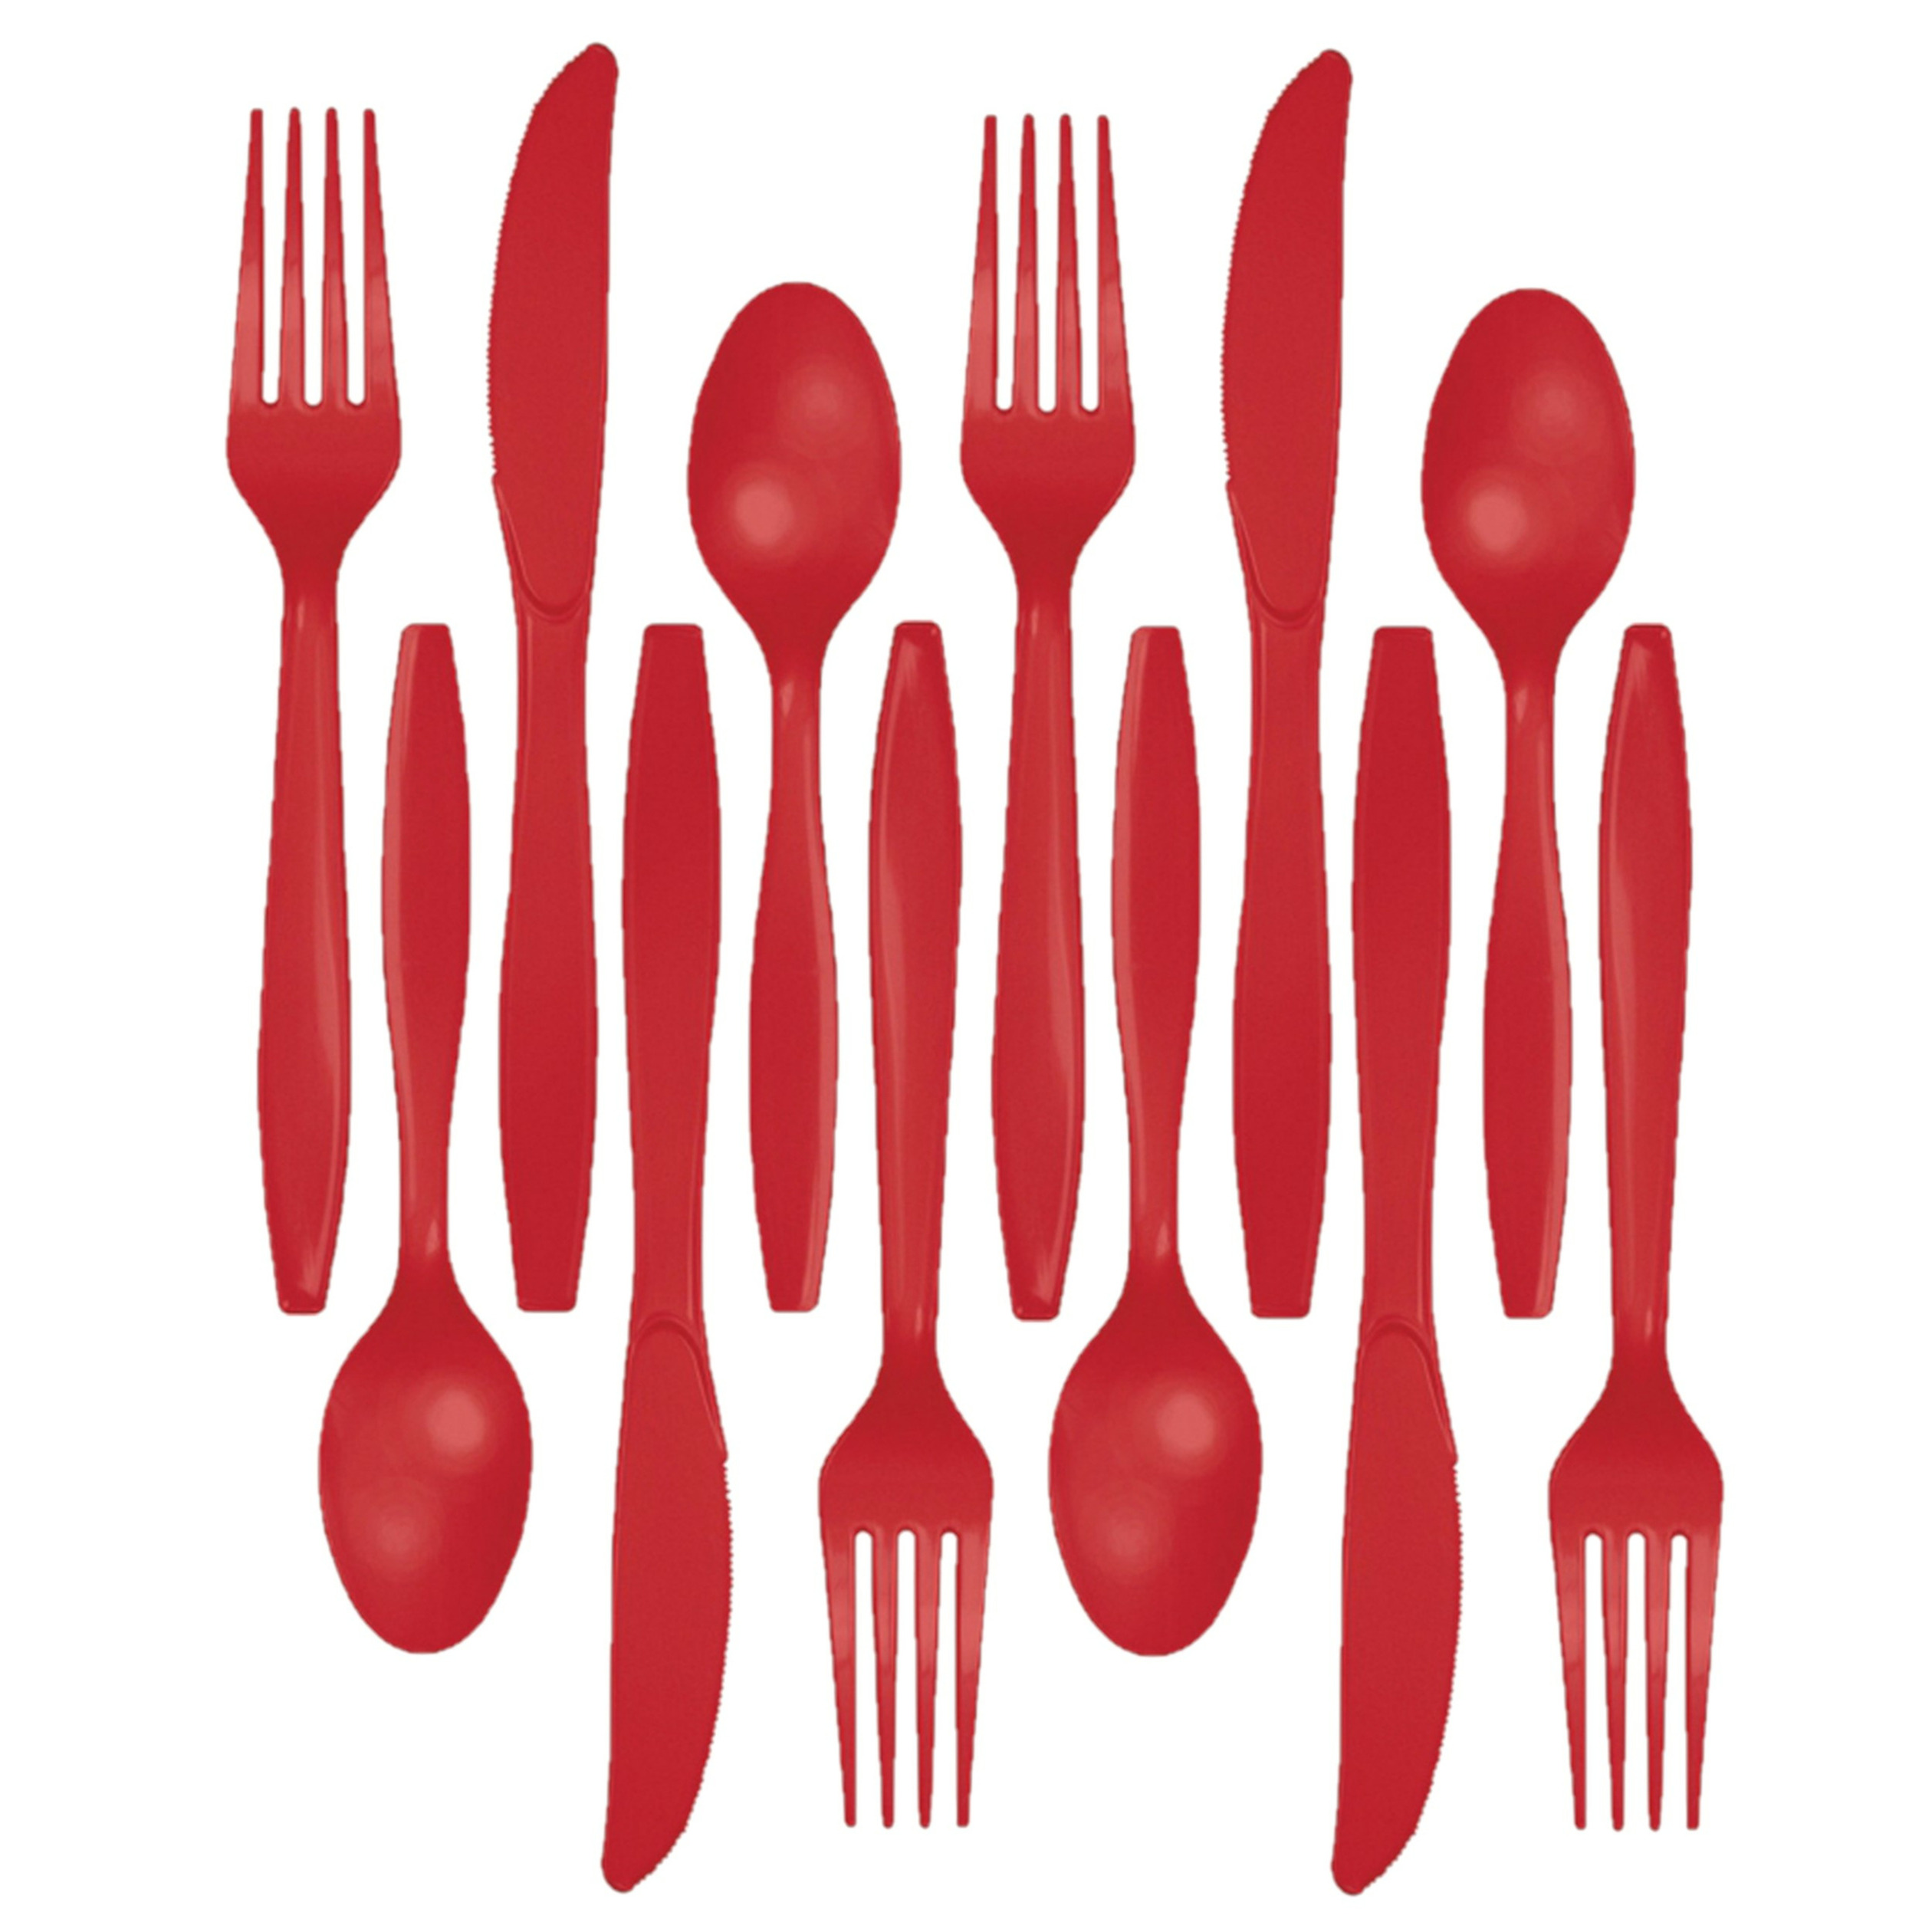 Kunststof bestek party-bbq setje 96x delig rood messen-vorken-lepels herbruikbaar